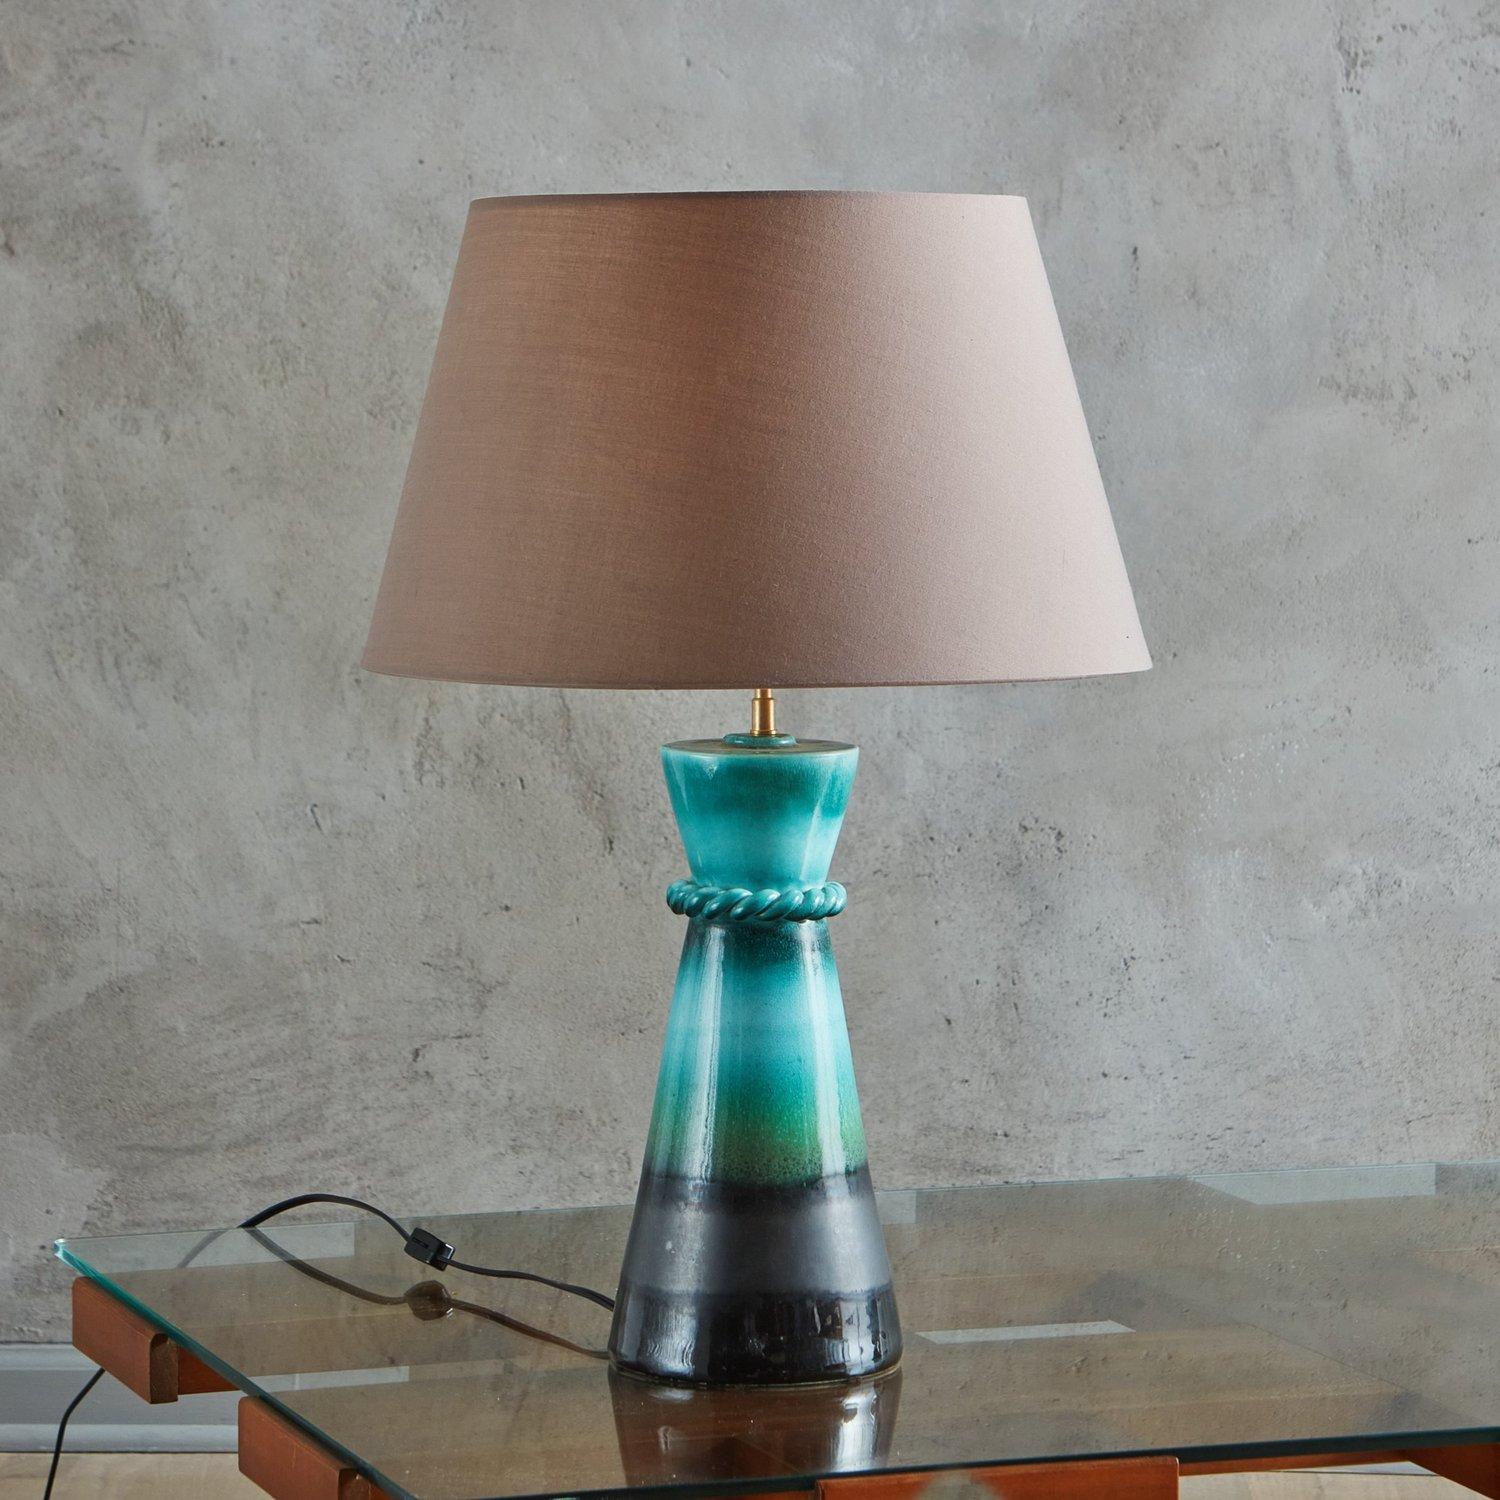 Lampe de table française des années 1940, dotée d'une base effilée en céramique émaillée aux riches teintes turquoise, vertes et noires. Cette lampe est dotée d'une garniture décorative tressée et d'un abat-jour en tissu taupe. Estampillé 